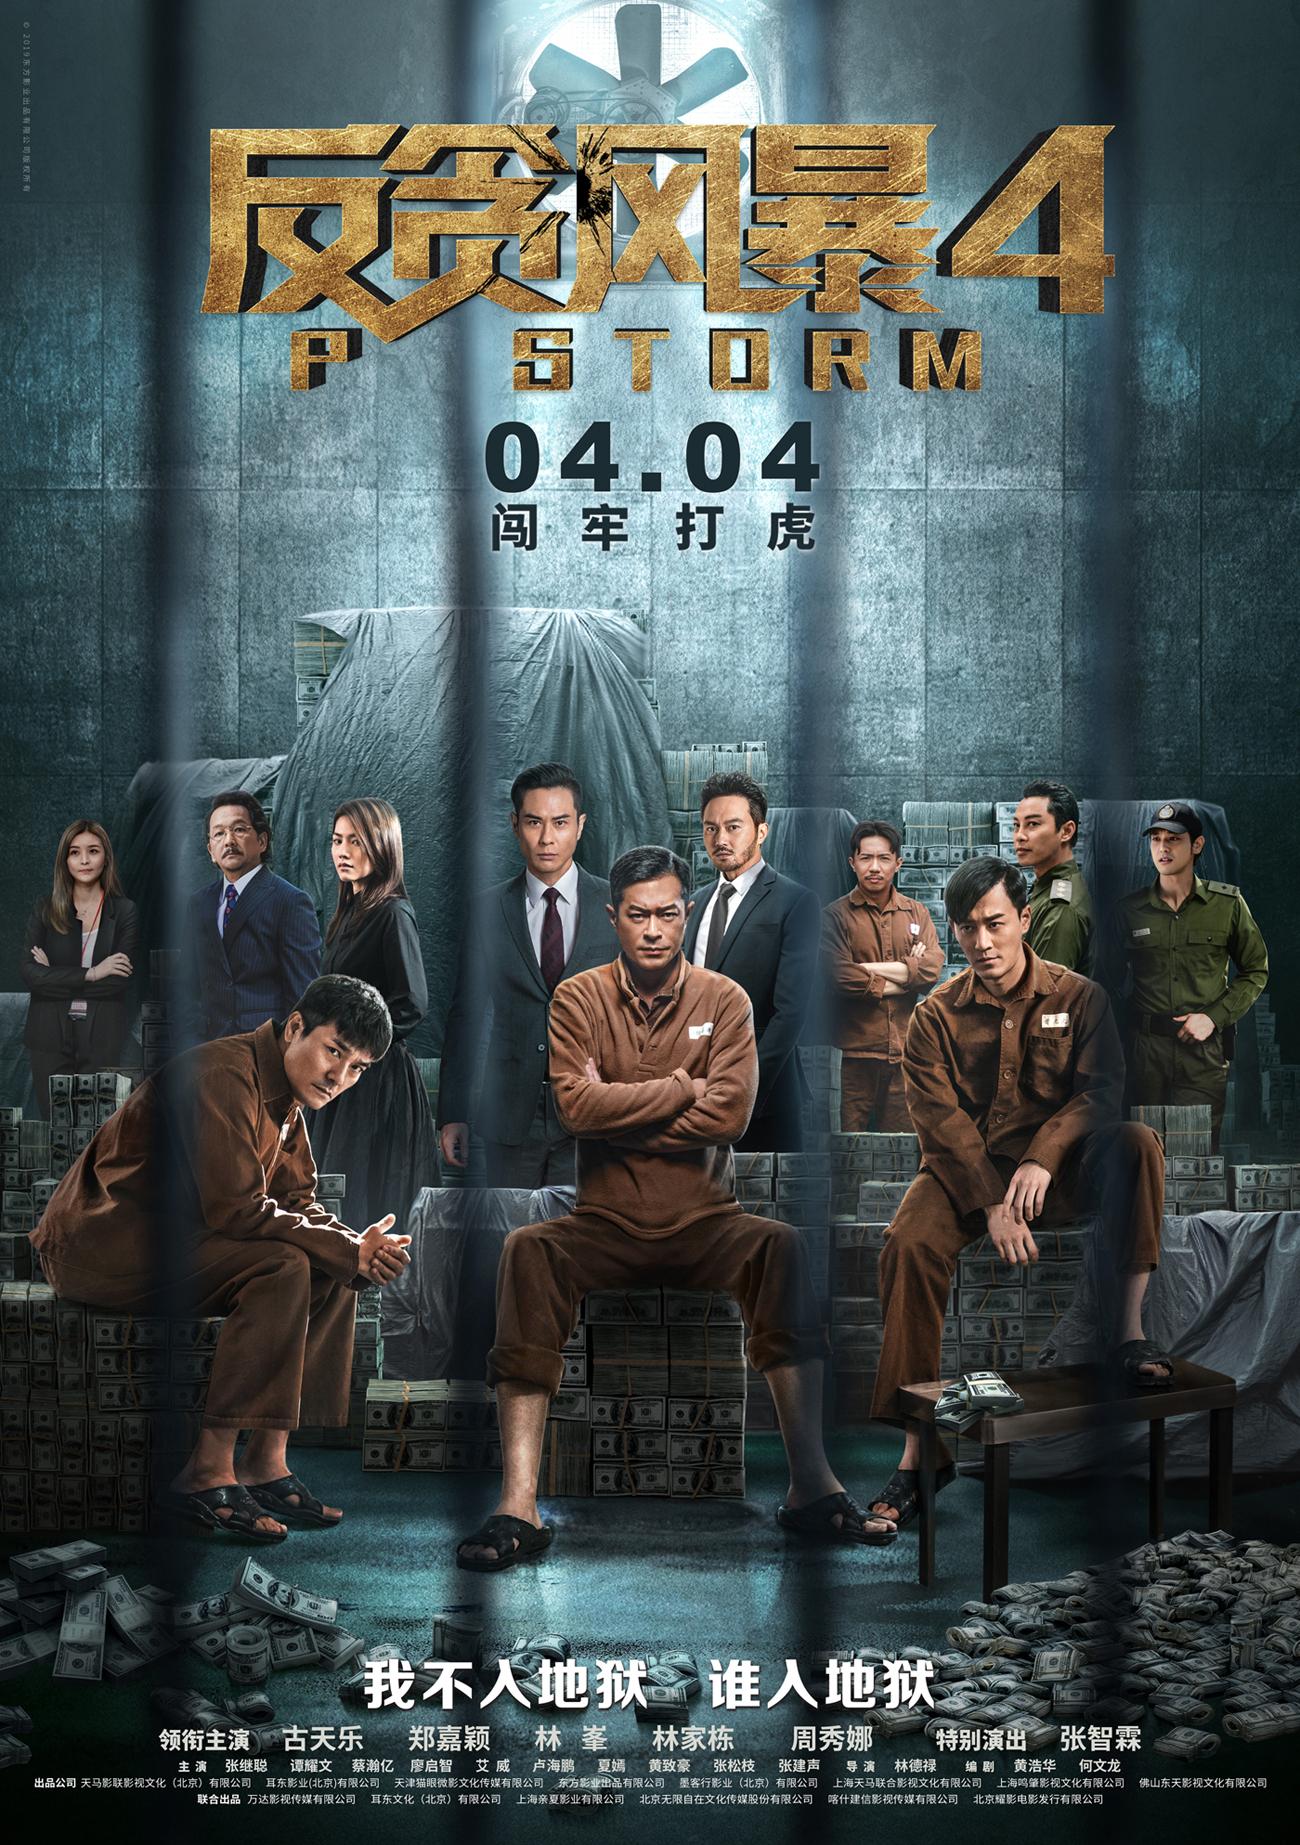 HK TV Drama, HK Movie, P Storm